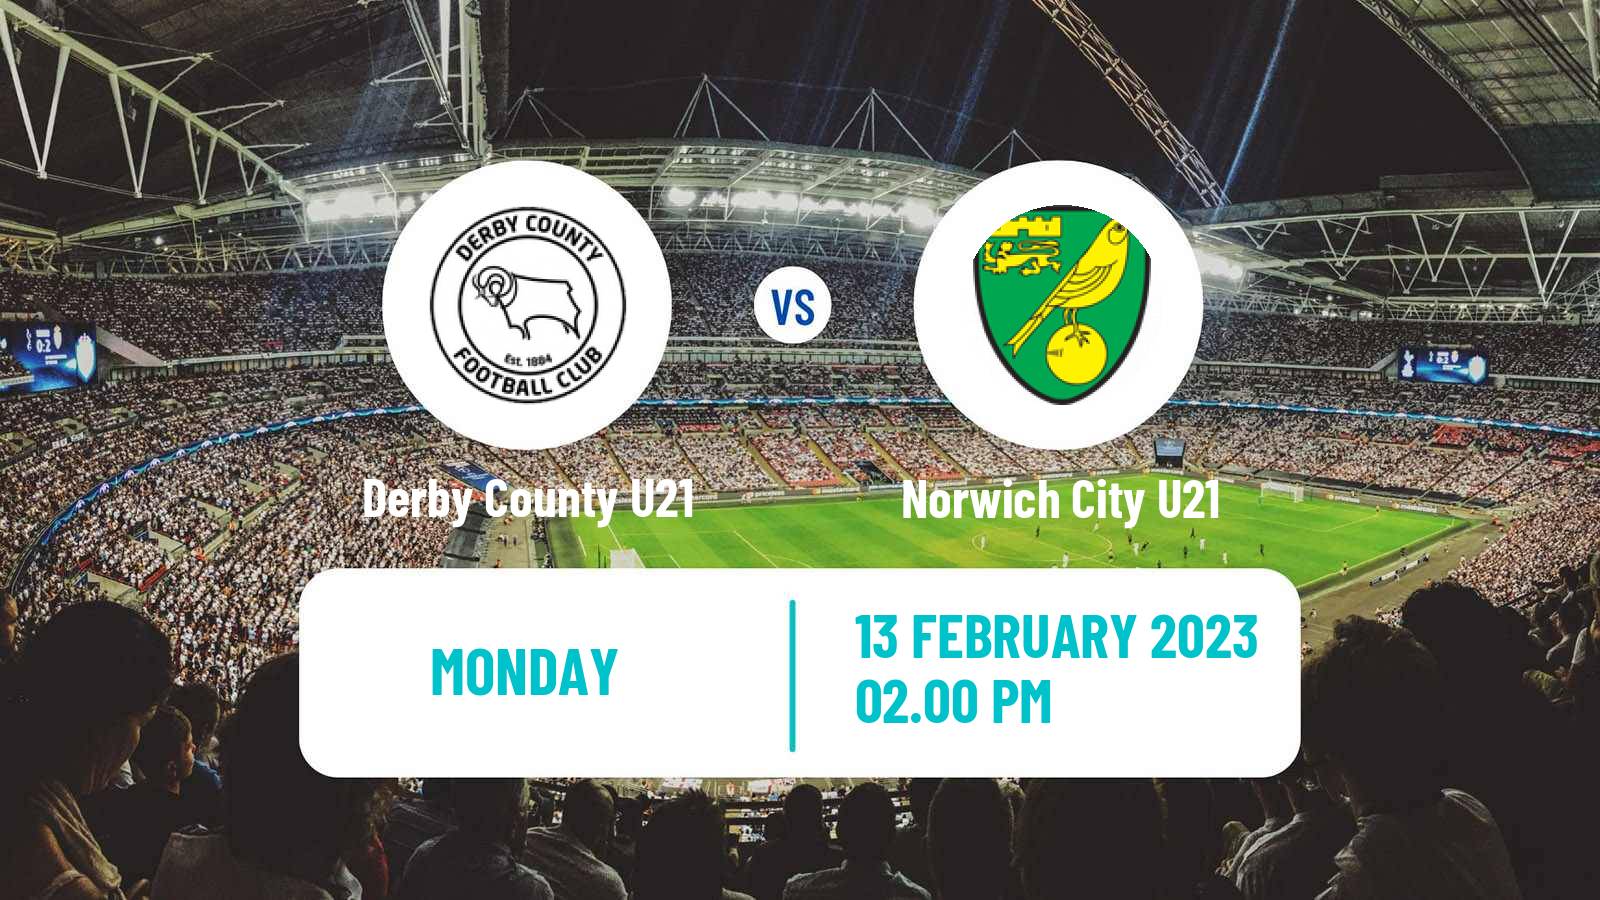 Soccer English Premier League 2 Derby County U21 - Norwich City U21